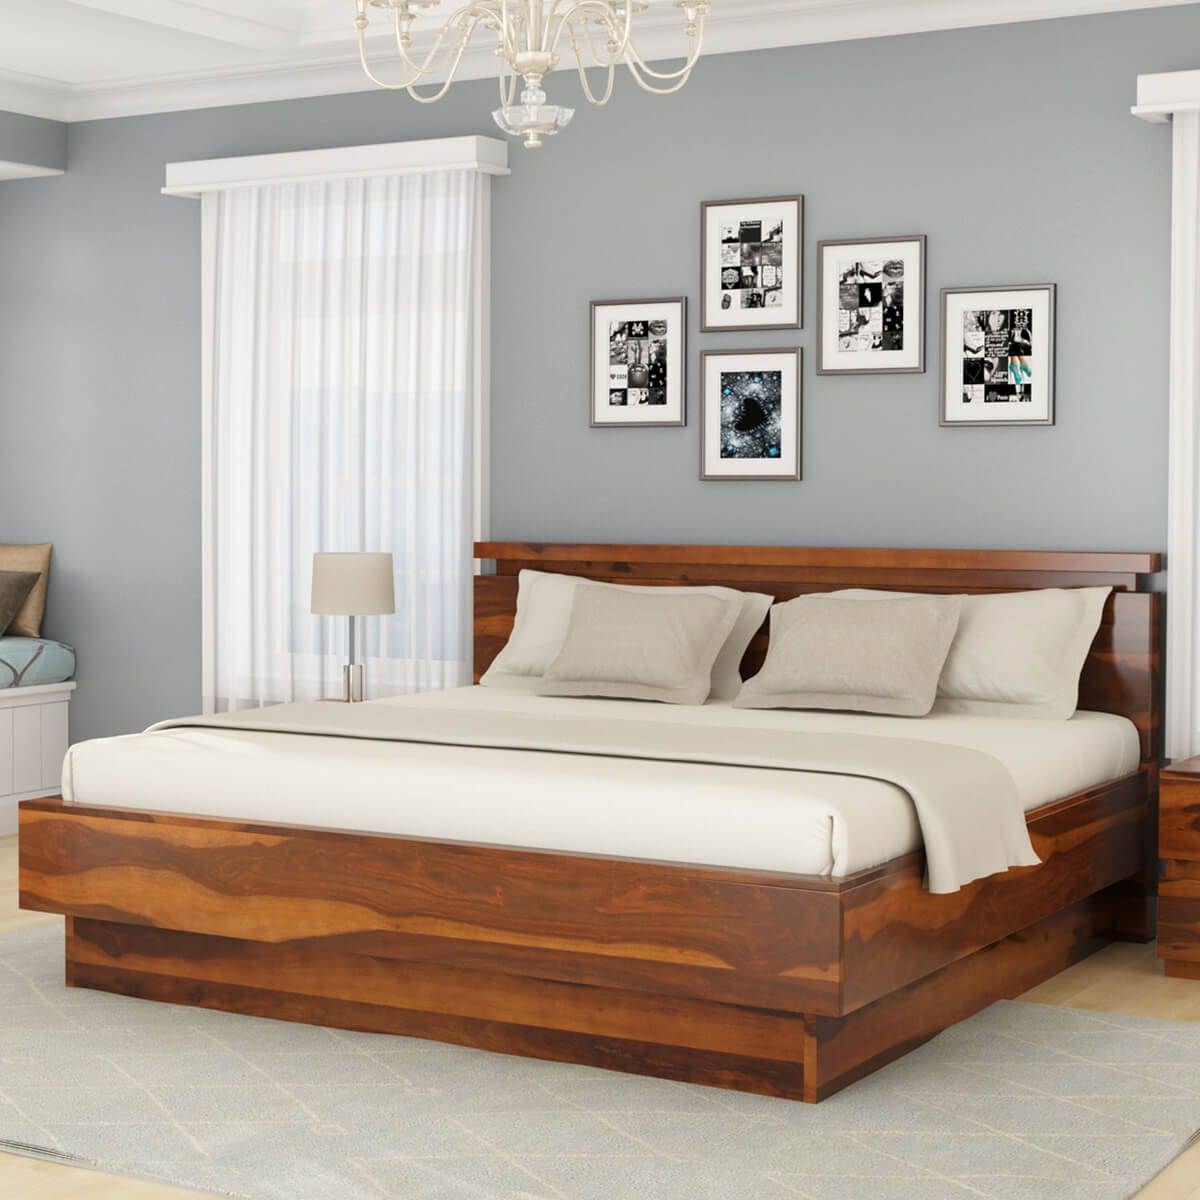 King Size - Simplicity Solid Wood Custom Platform Bed Frame